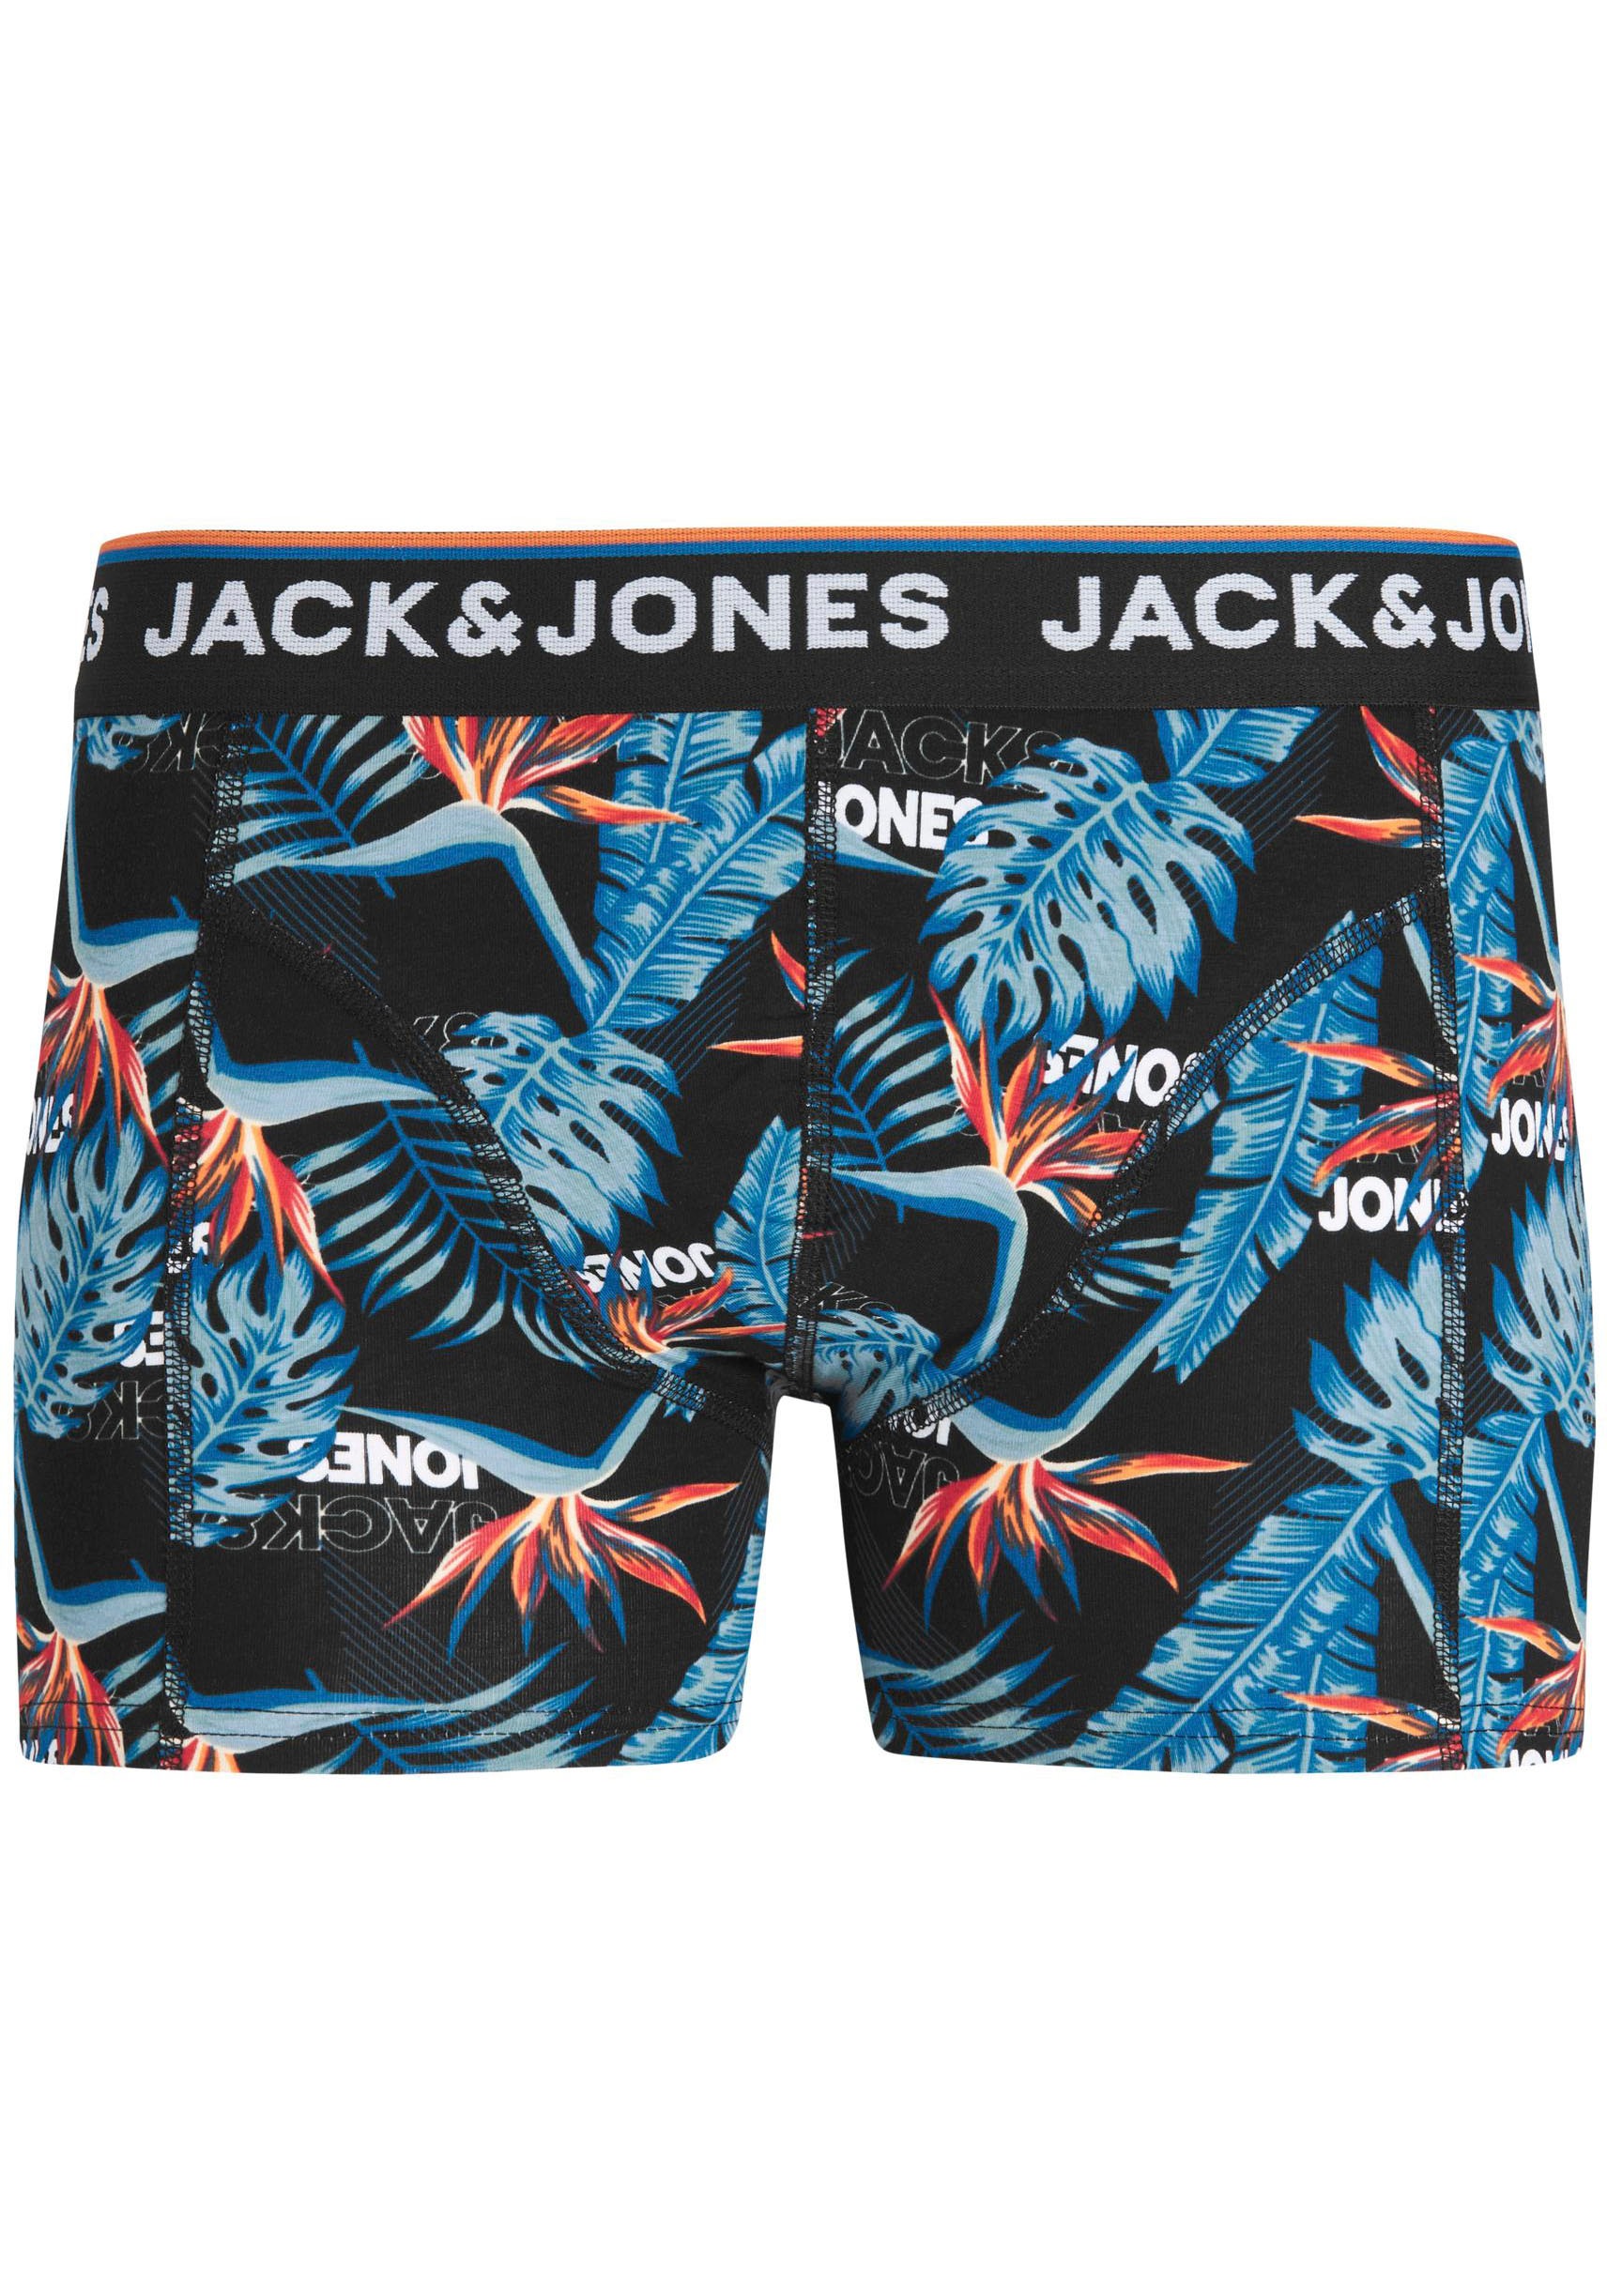 PACK JNR«, Junior St.) Jack (Packung, TRUNKS 3 Trouver NOOS & Boxershorts sur Jones »JACAZORES 3